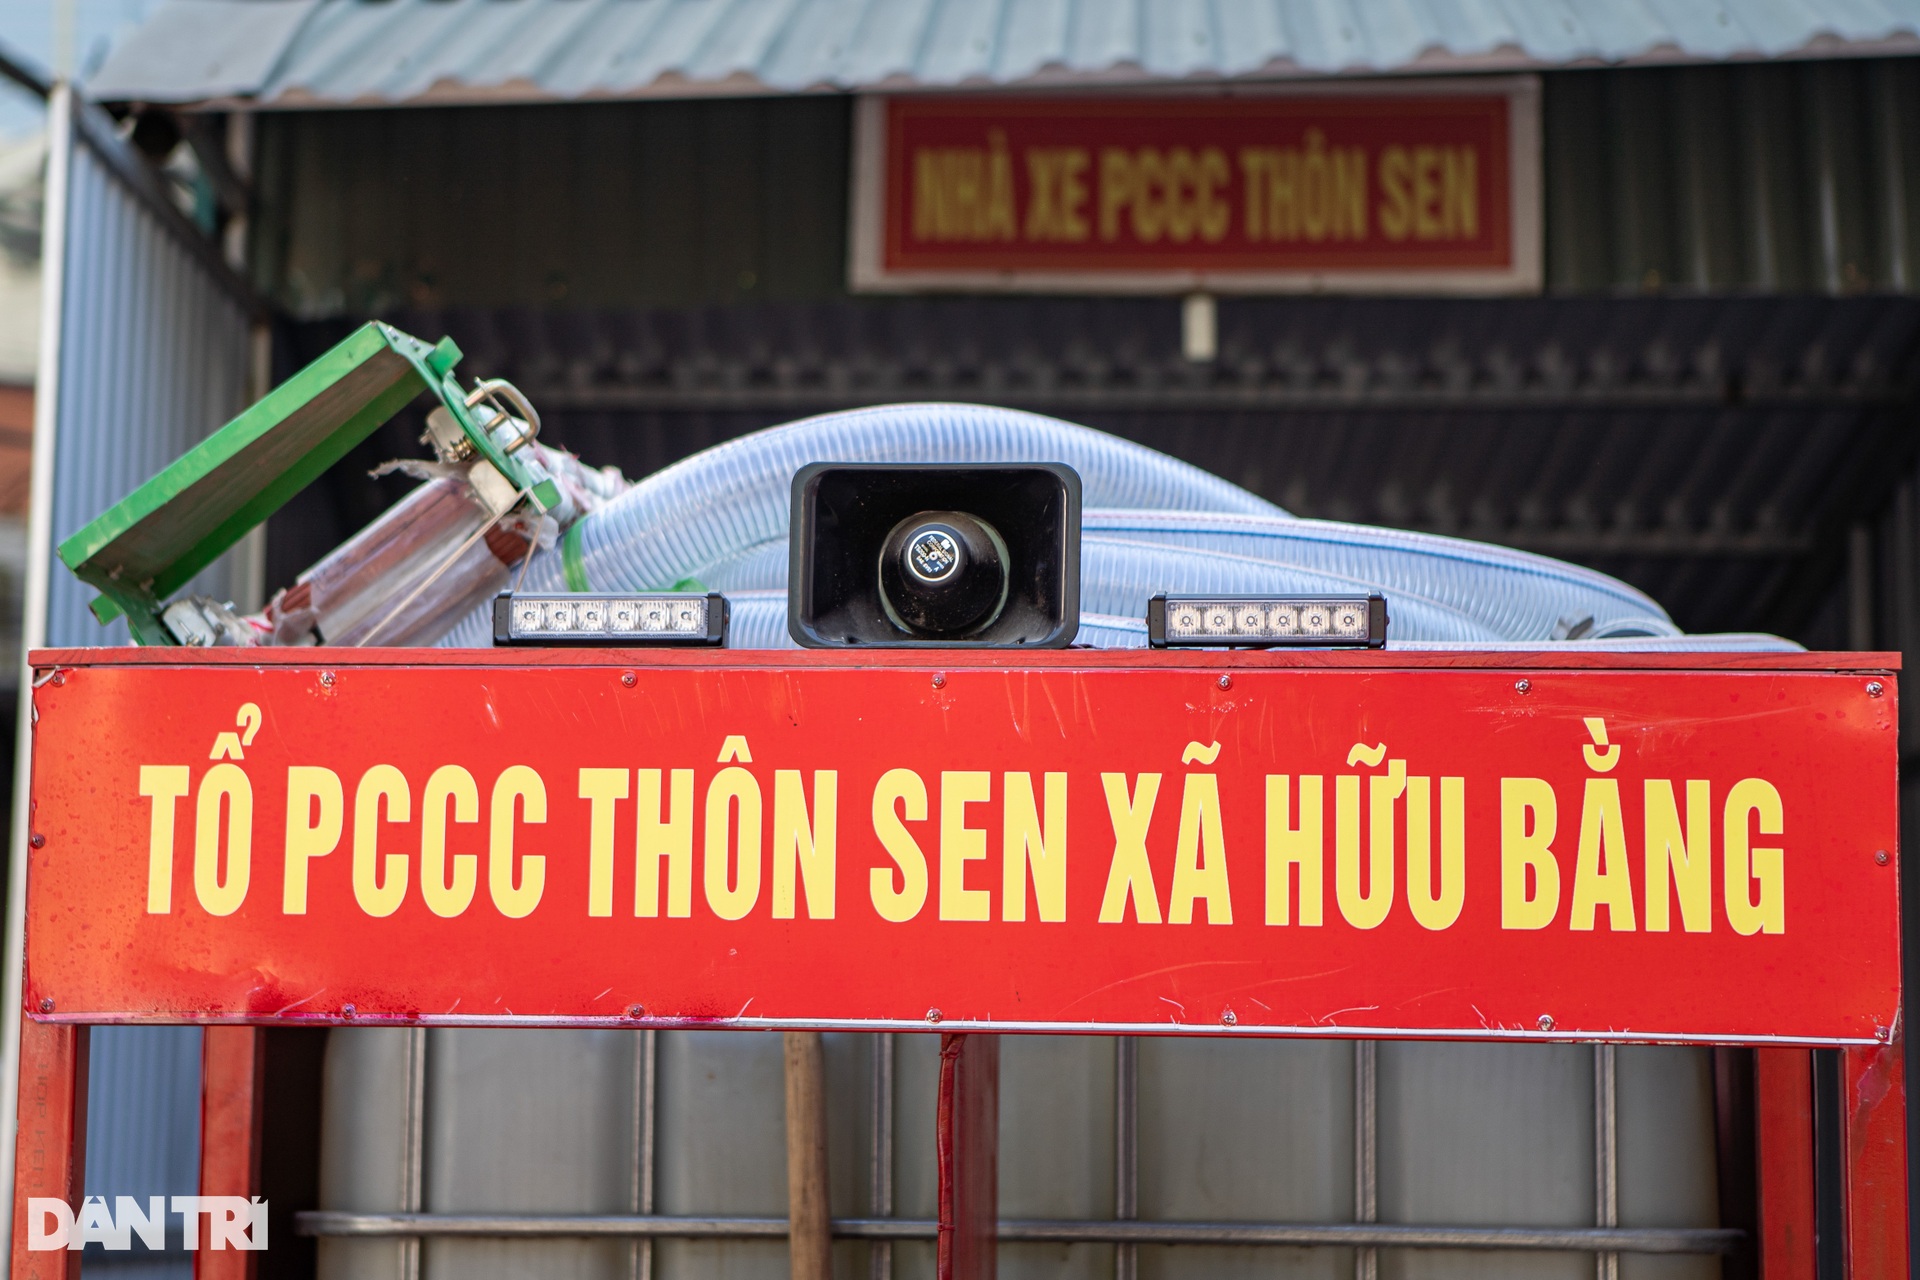 Đội cứu hỏa ba gác ở Hà Nội: Có cháy, anh em tạm gác công việc đi dập lửa - 3